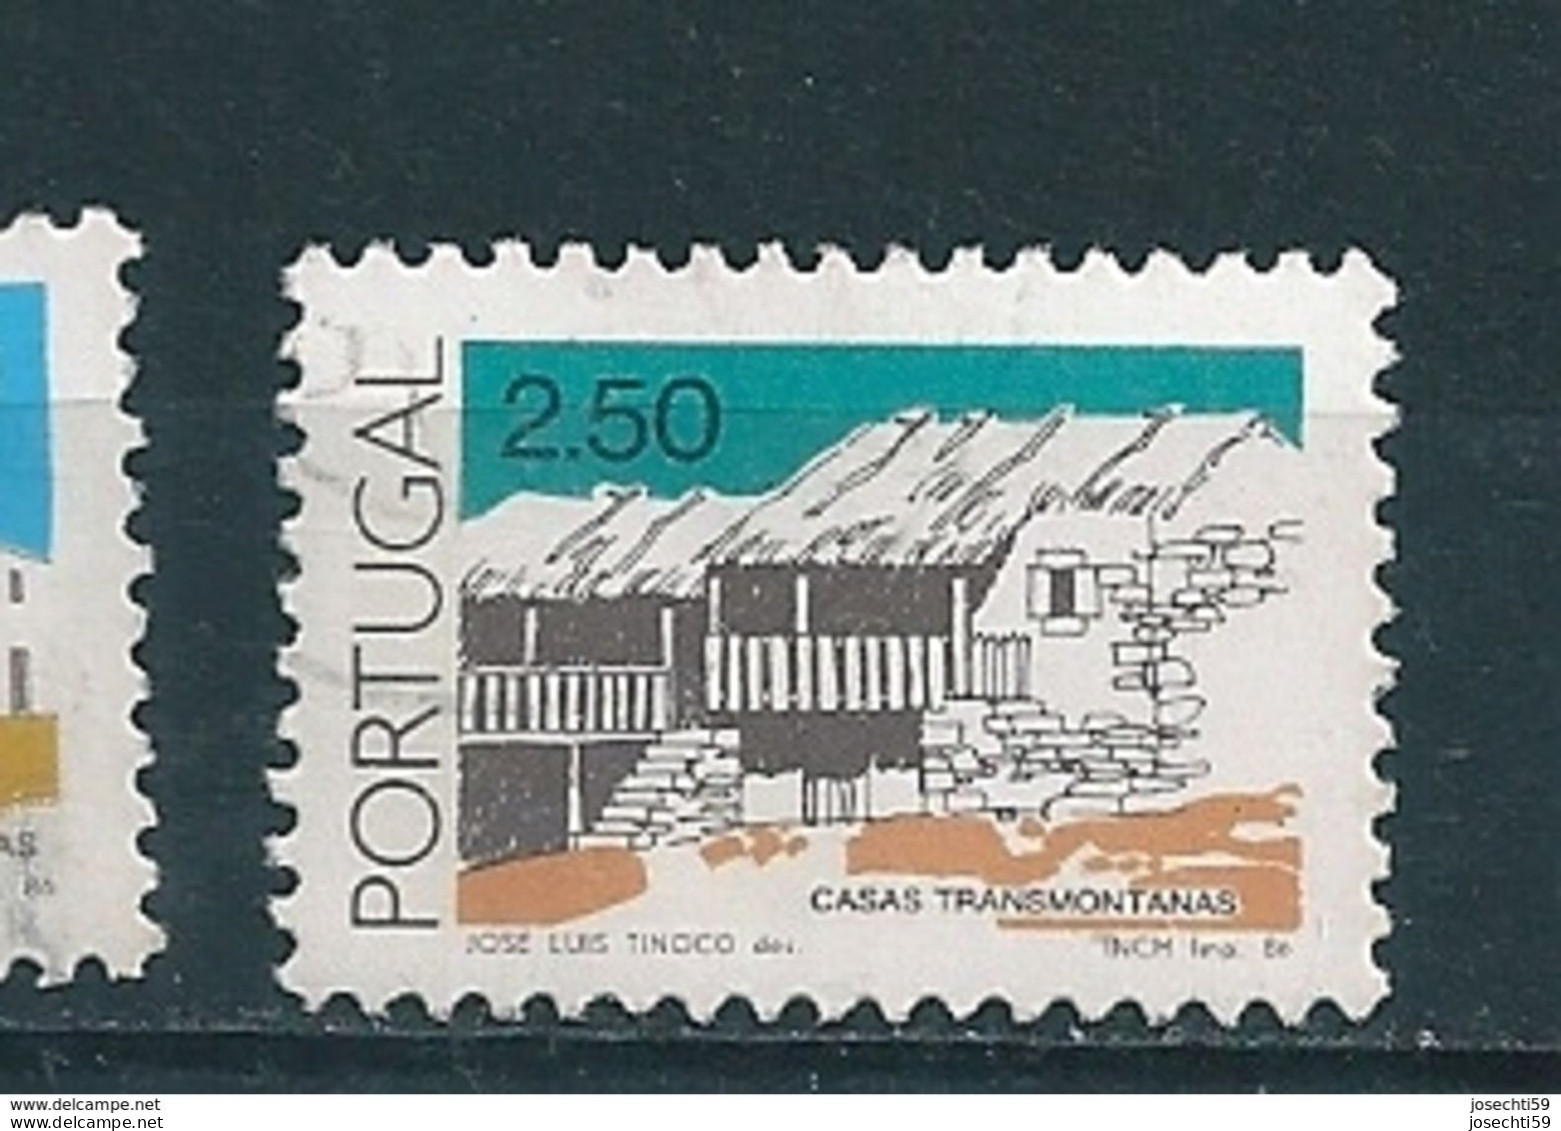 N° 1659 Maison De Tramontanas 2,50 Timbre Portugal Oblitéré 1986 - Gebraucht